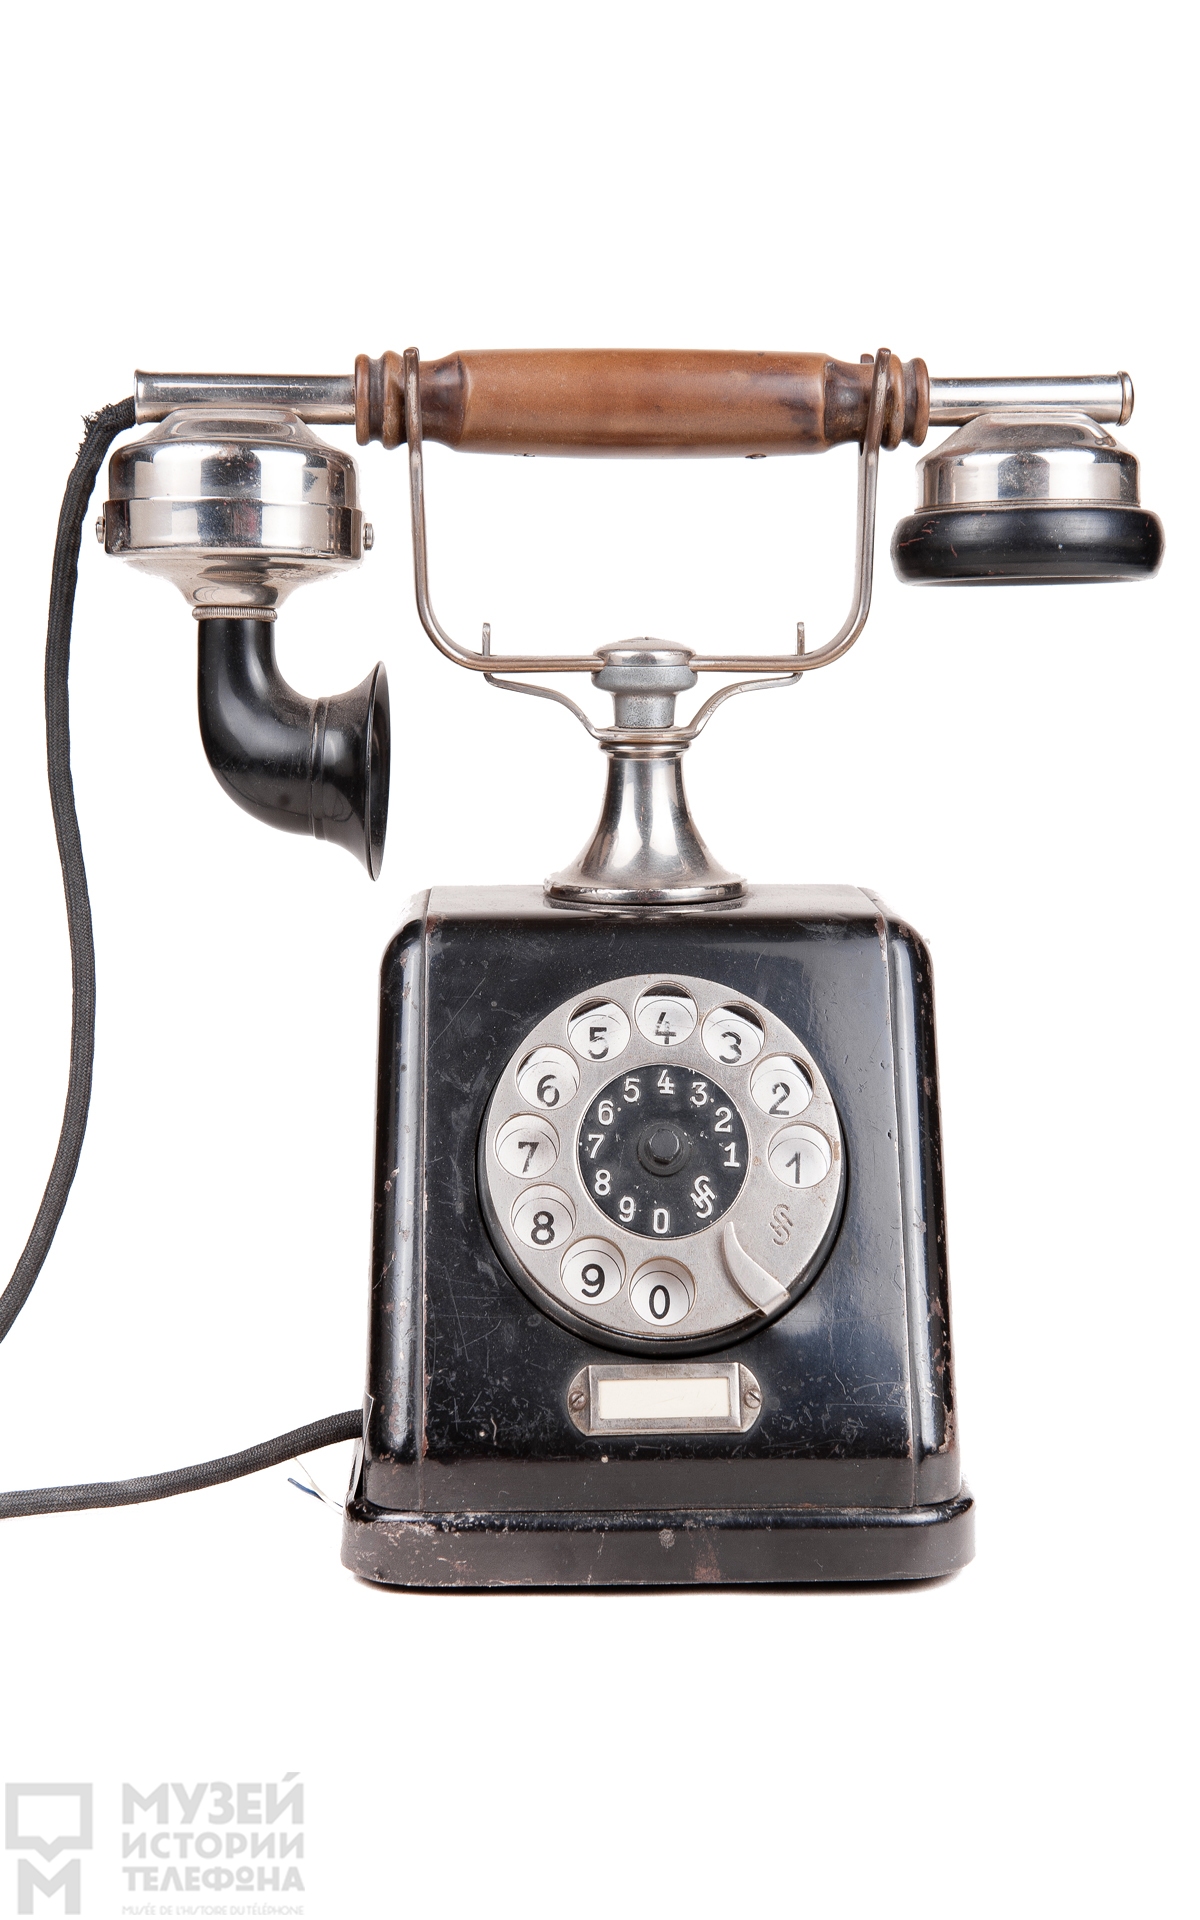 Настольный телефонный аппарат системы АТС с микротелефонной трубкой и наружным двухчашечным звонком, модель ZBSA 19